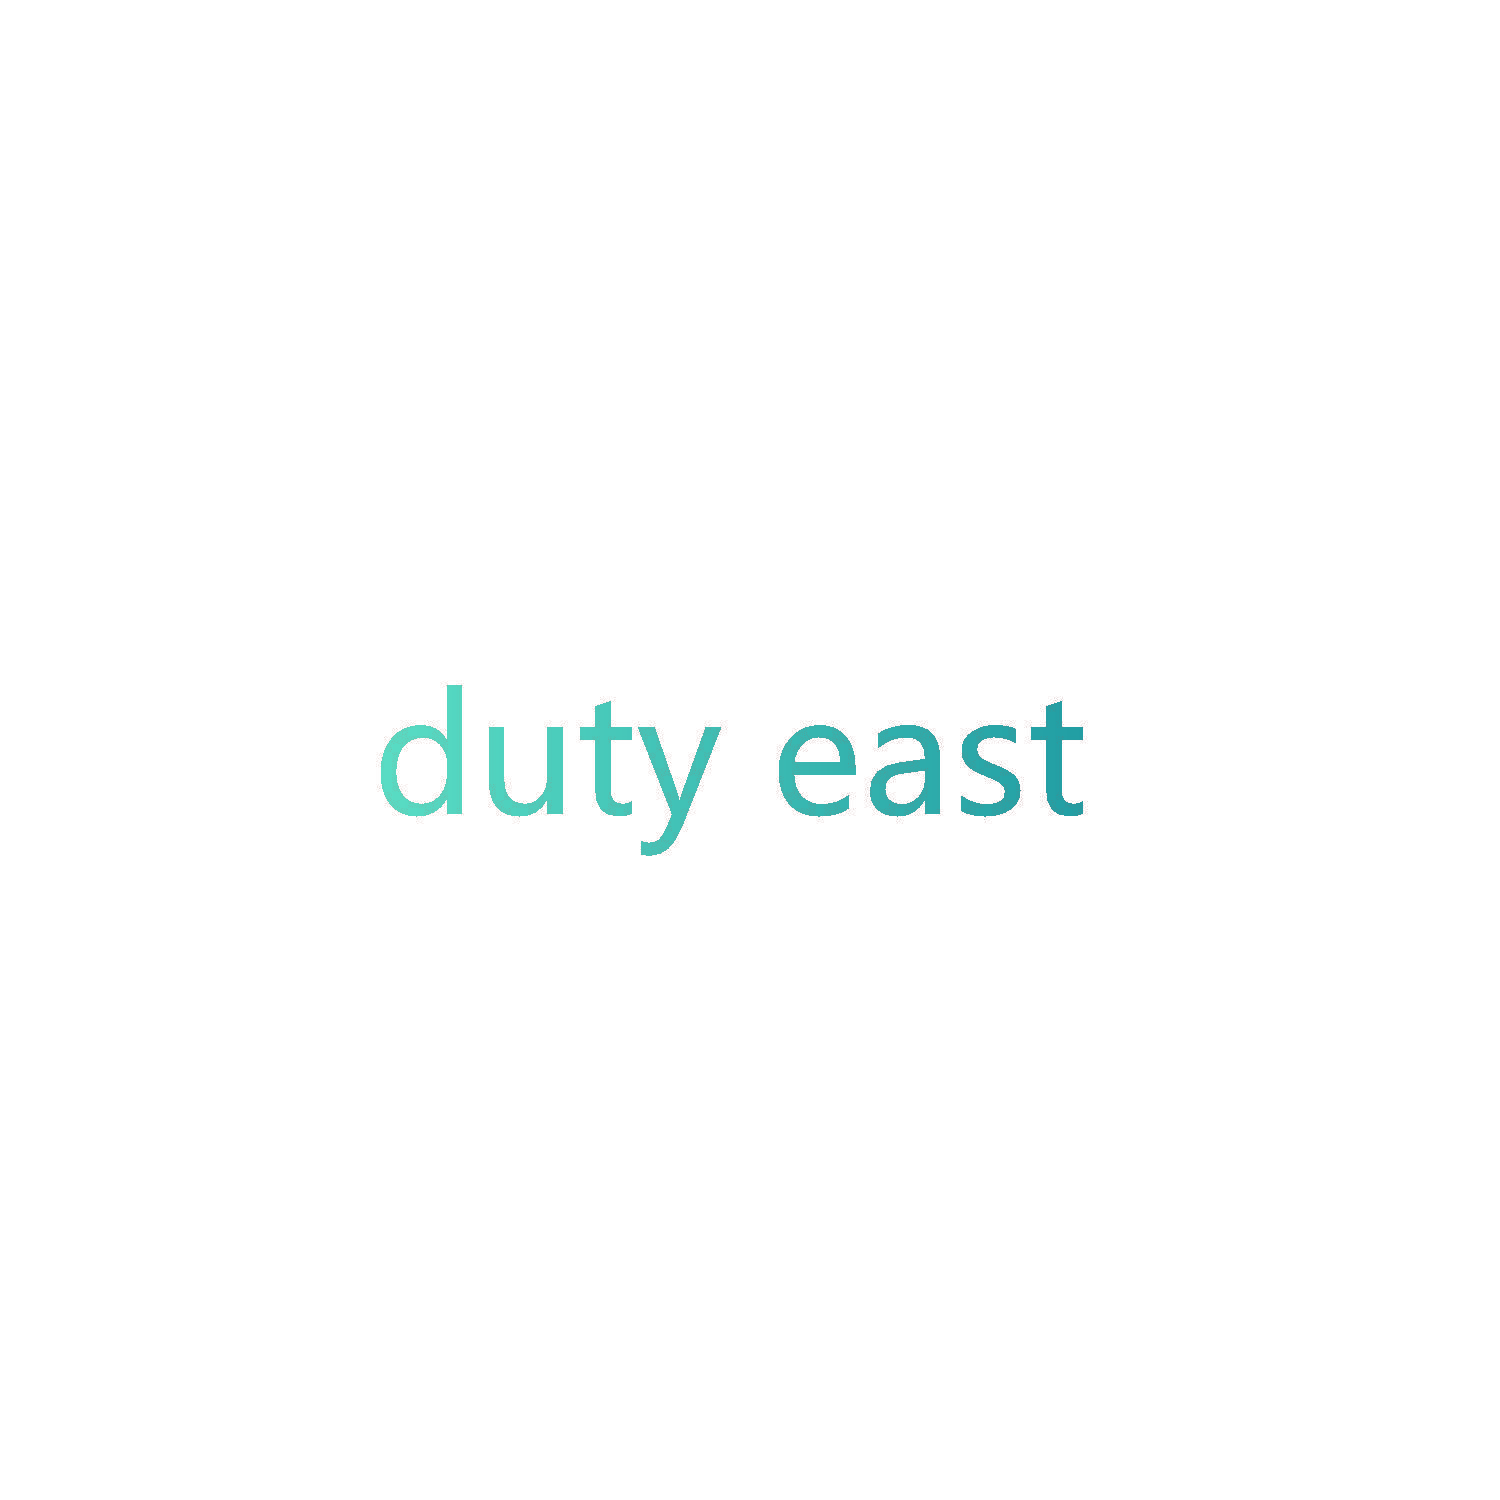 duty east